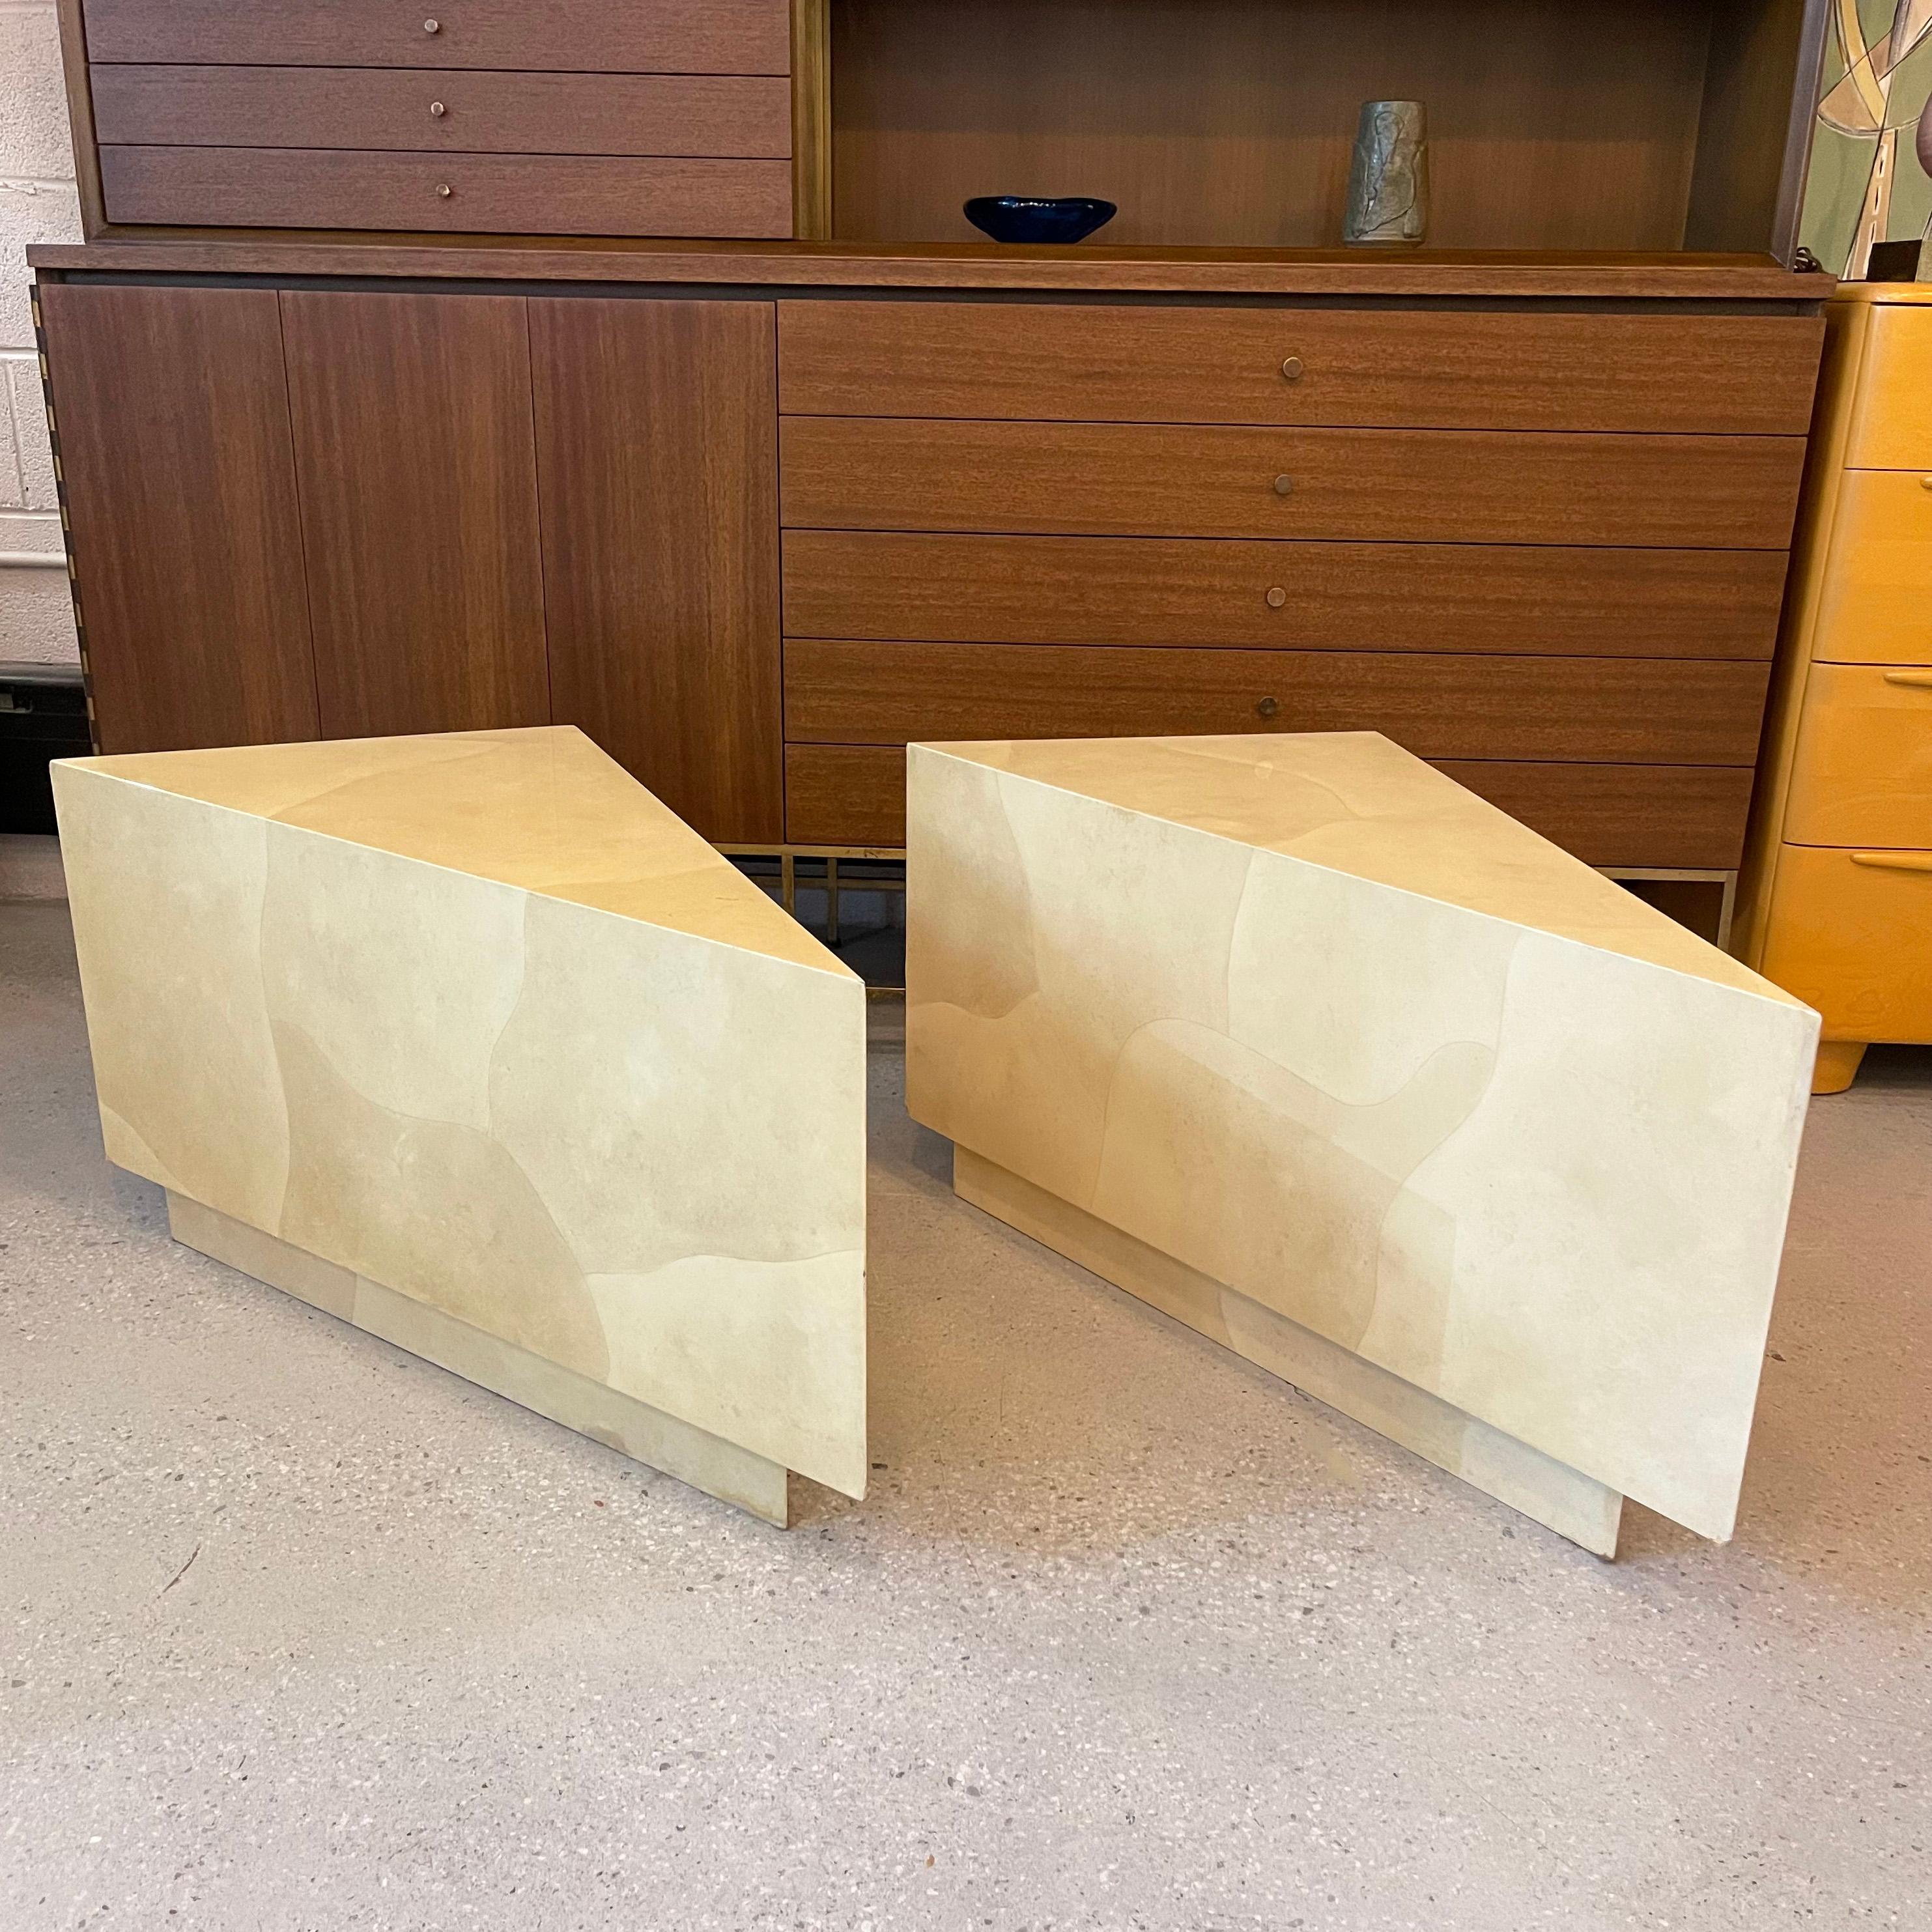 Ein Paar spektakuläre und vielseitige, modulare, dreieckige Beistelltische aus lackiertem Ziegenleder von Aldo Tura, Italien, können einzeln oder zusammen als Couchtisch in vielen Formen konfiguriert werden. Zusammen als eine rechteckige